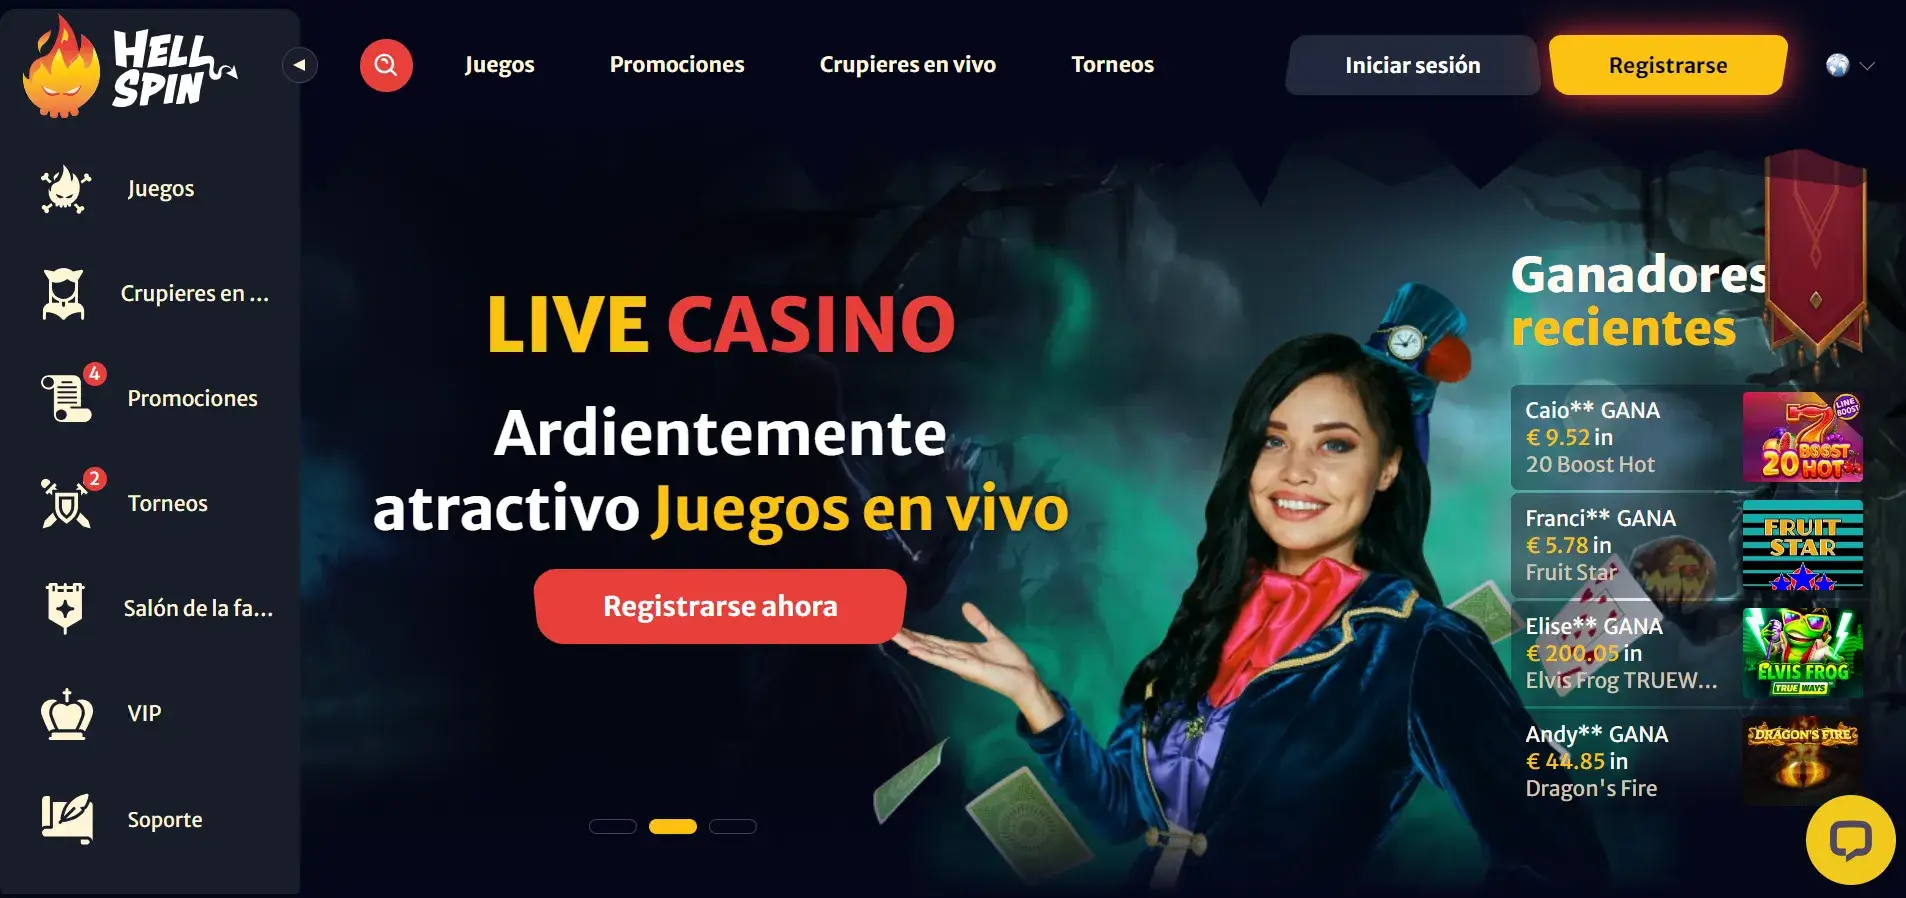 Mx casino online